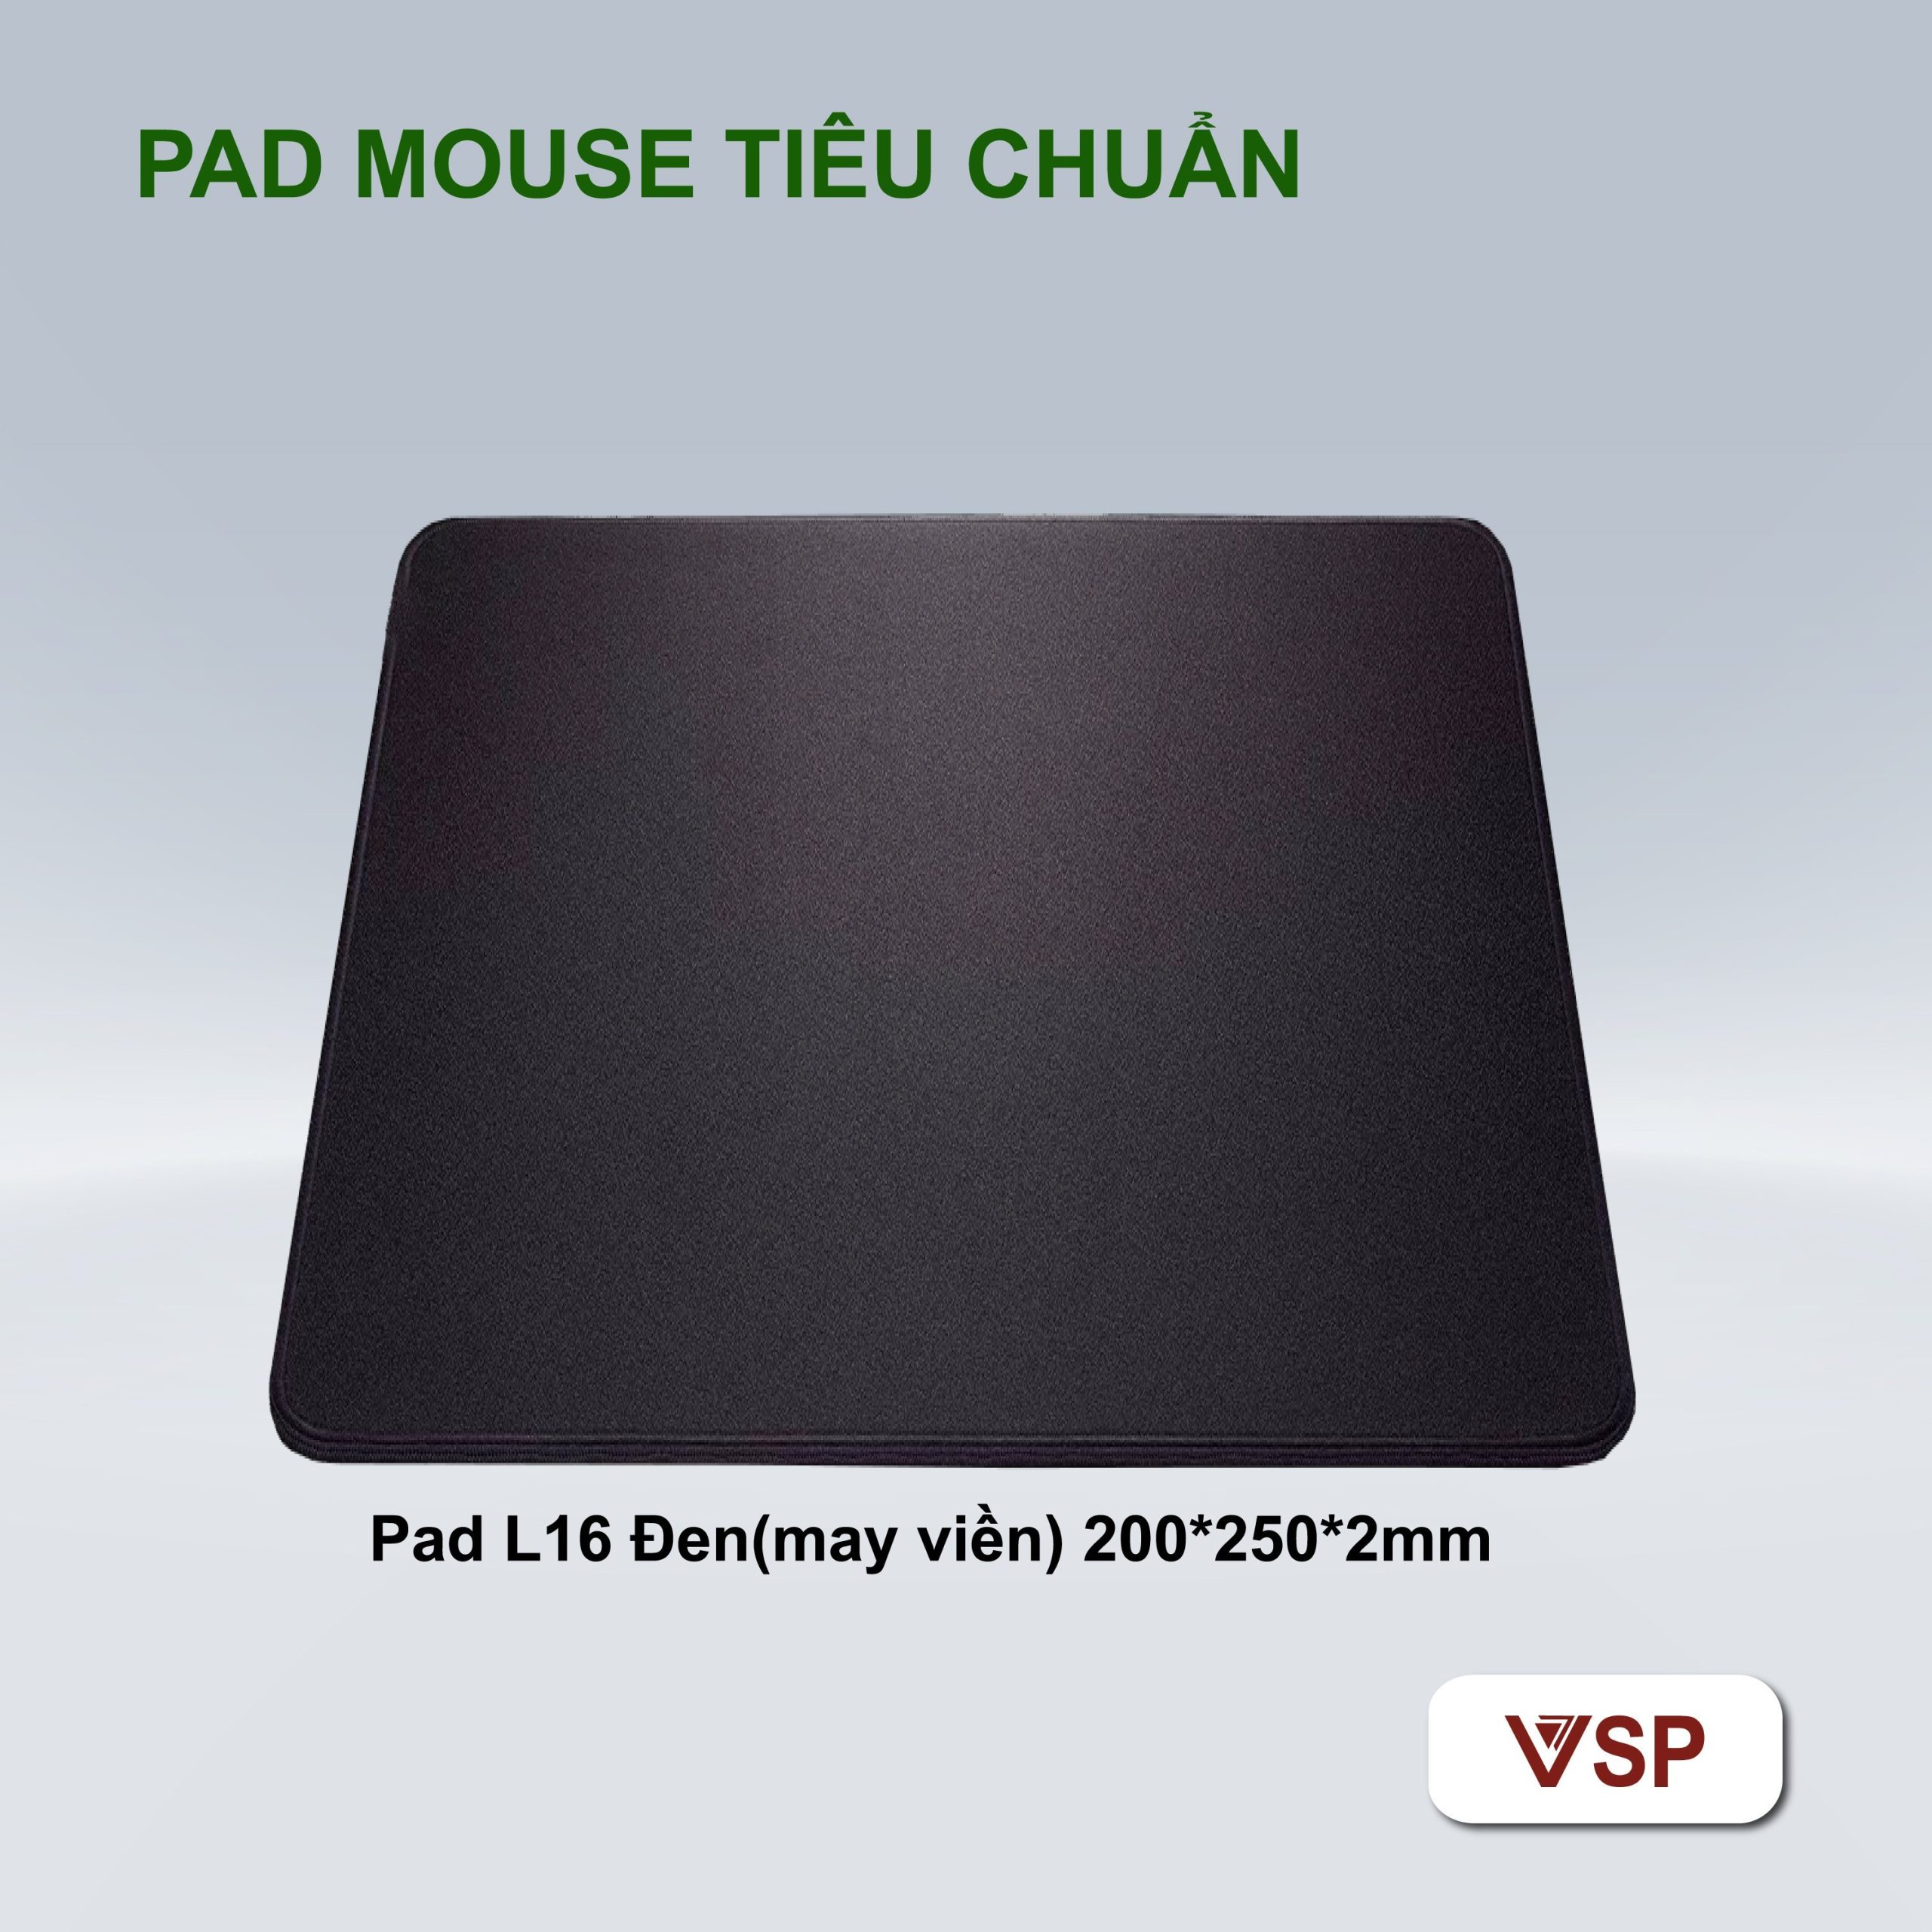 Pad mouse L16 Đen (May viền, 200*250*2mm) (mua trên 5c giá 9k)